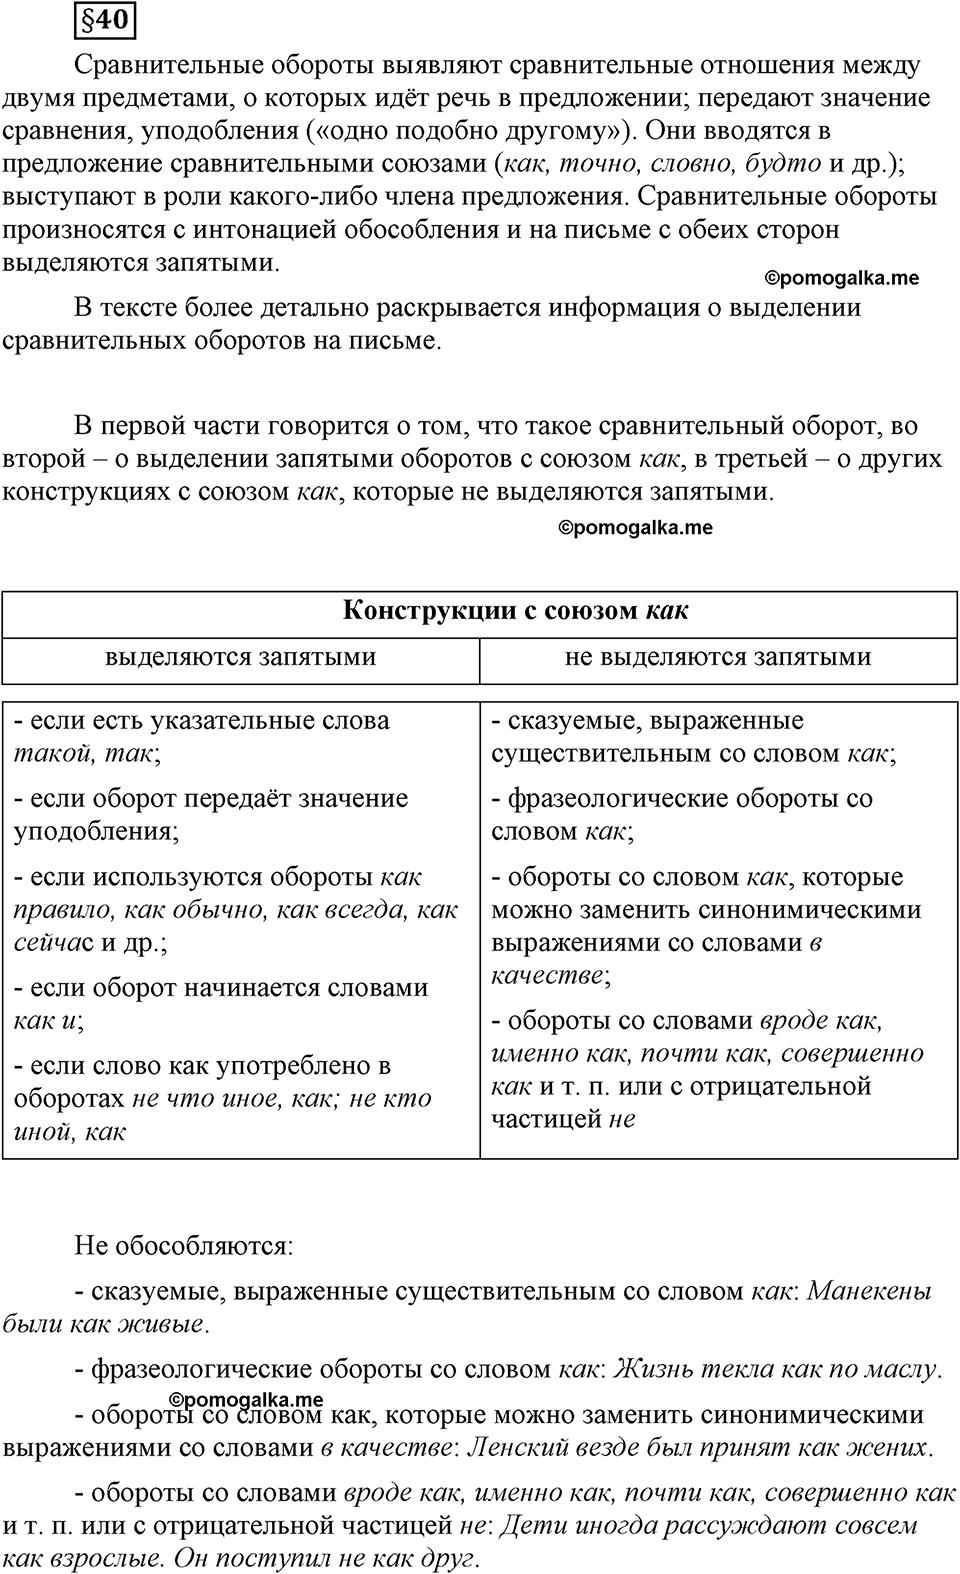 страница 233 вопросы к §40 русский язык 8 класс Львова, Львов 2014 год